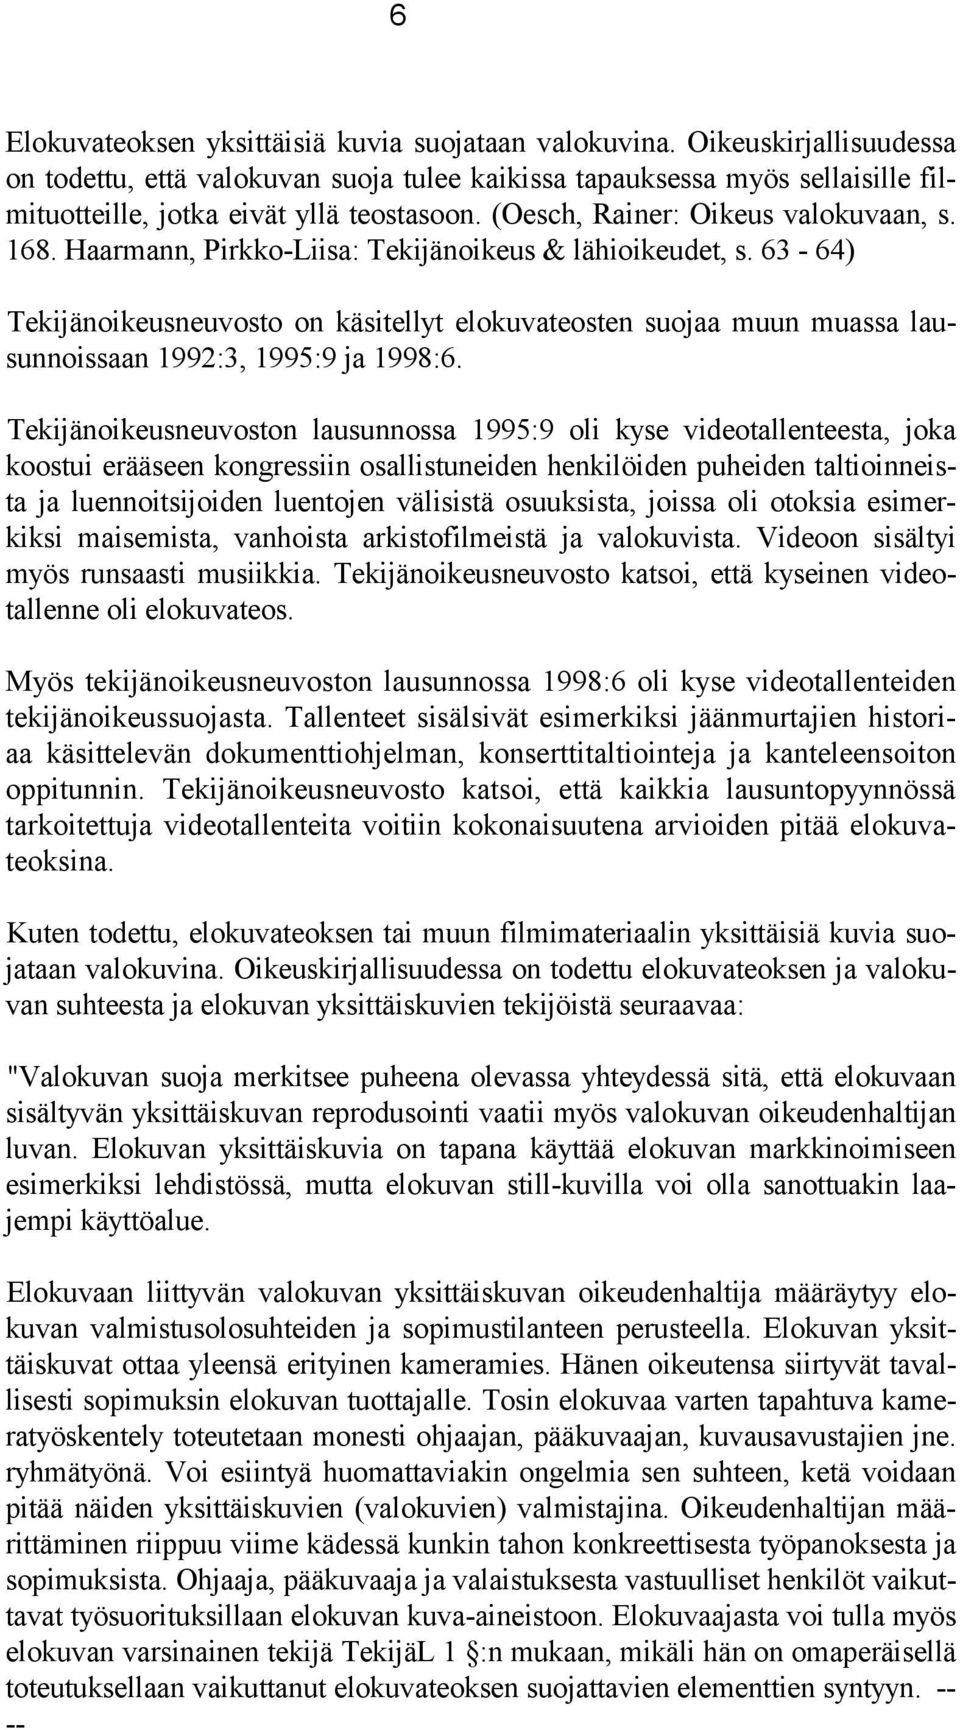 Haarmann, Pirkko-Liisa: Tekijänoikeus & lähioikeudet, s. 63-64) Tekijänoikeusneuvosto on käsitellyt elokuvateosten suojaa muun muassa lausunnoissaan 1992:3, 1995:9 ja 1998:6.